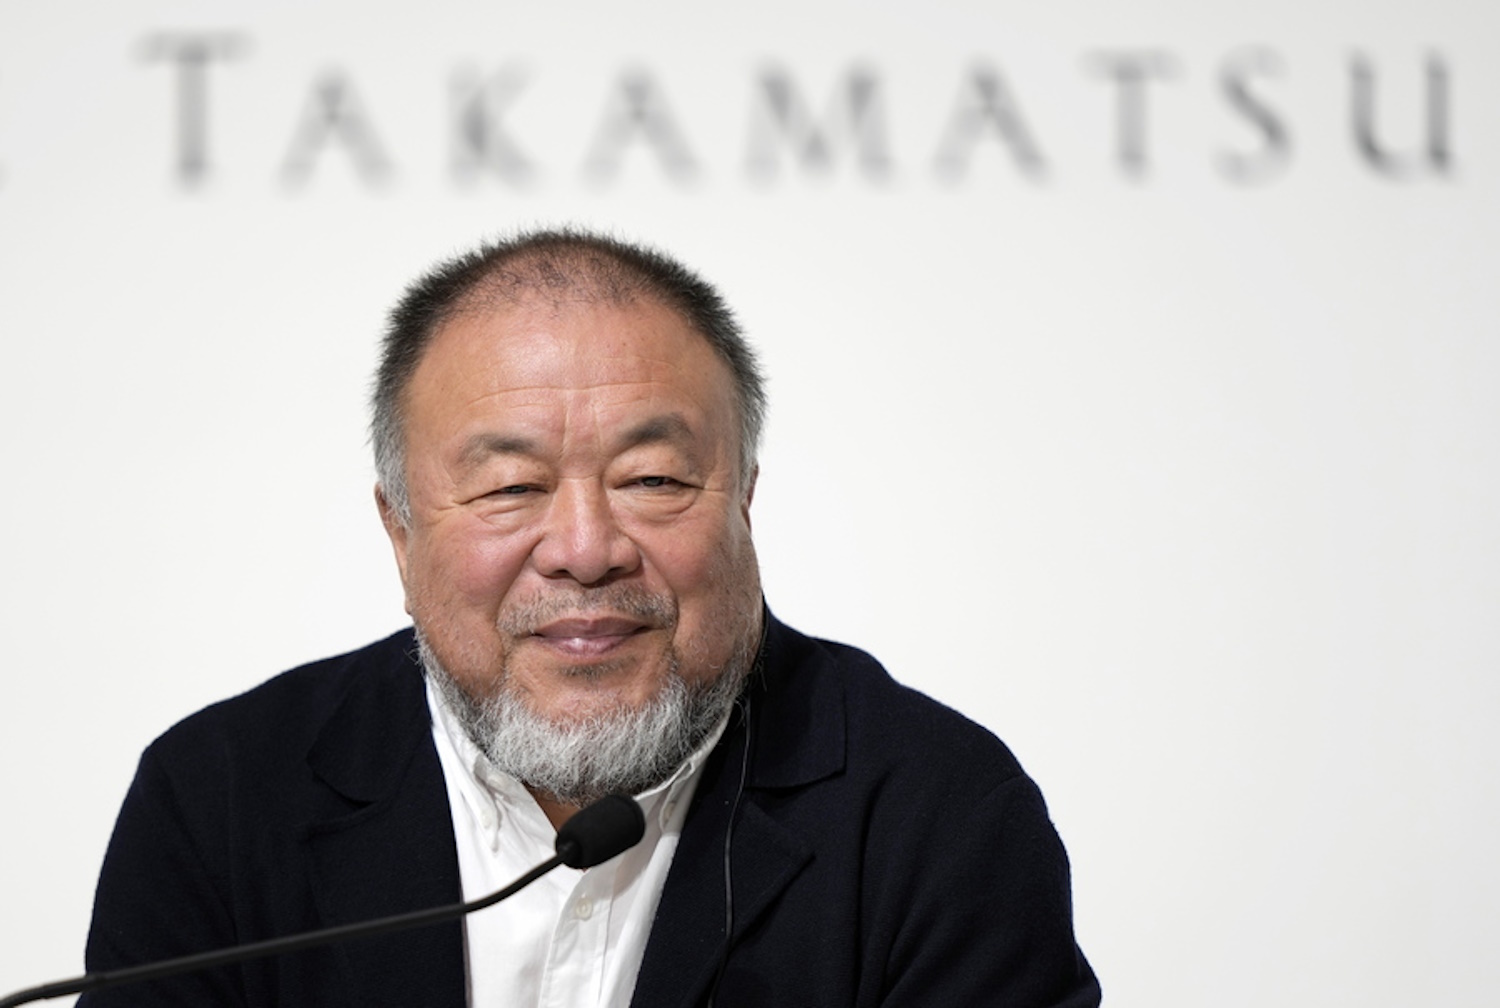 Ο καλλιτέχνης Ai Weiwei θέτει 81 ερωτήσεις στην τεχνητή νοημοσύνη, όσες ημέρες φυλακίστηκε στην Κίνα